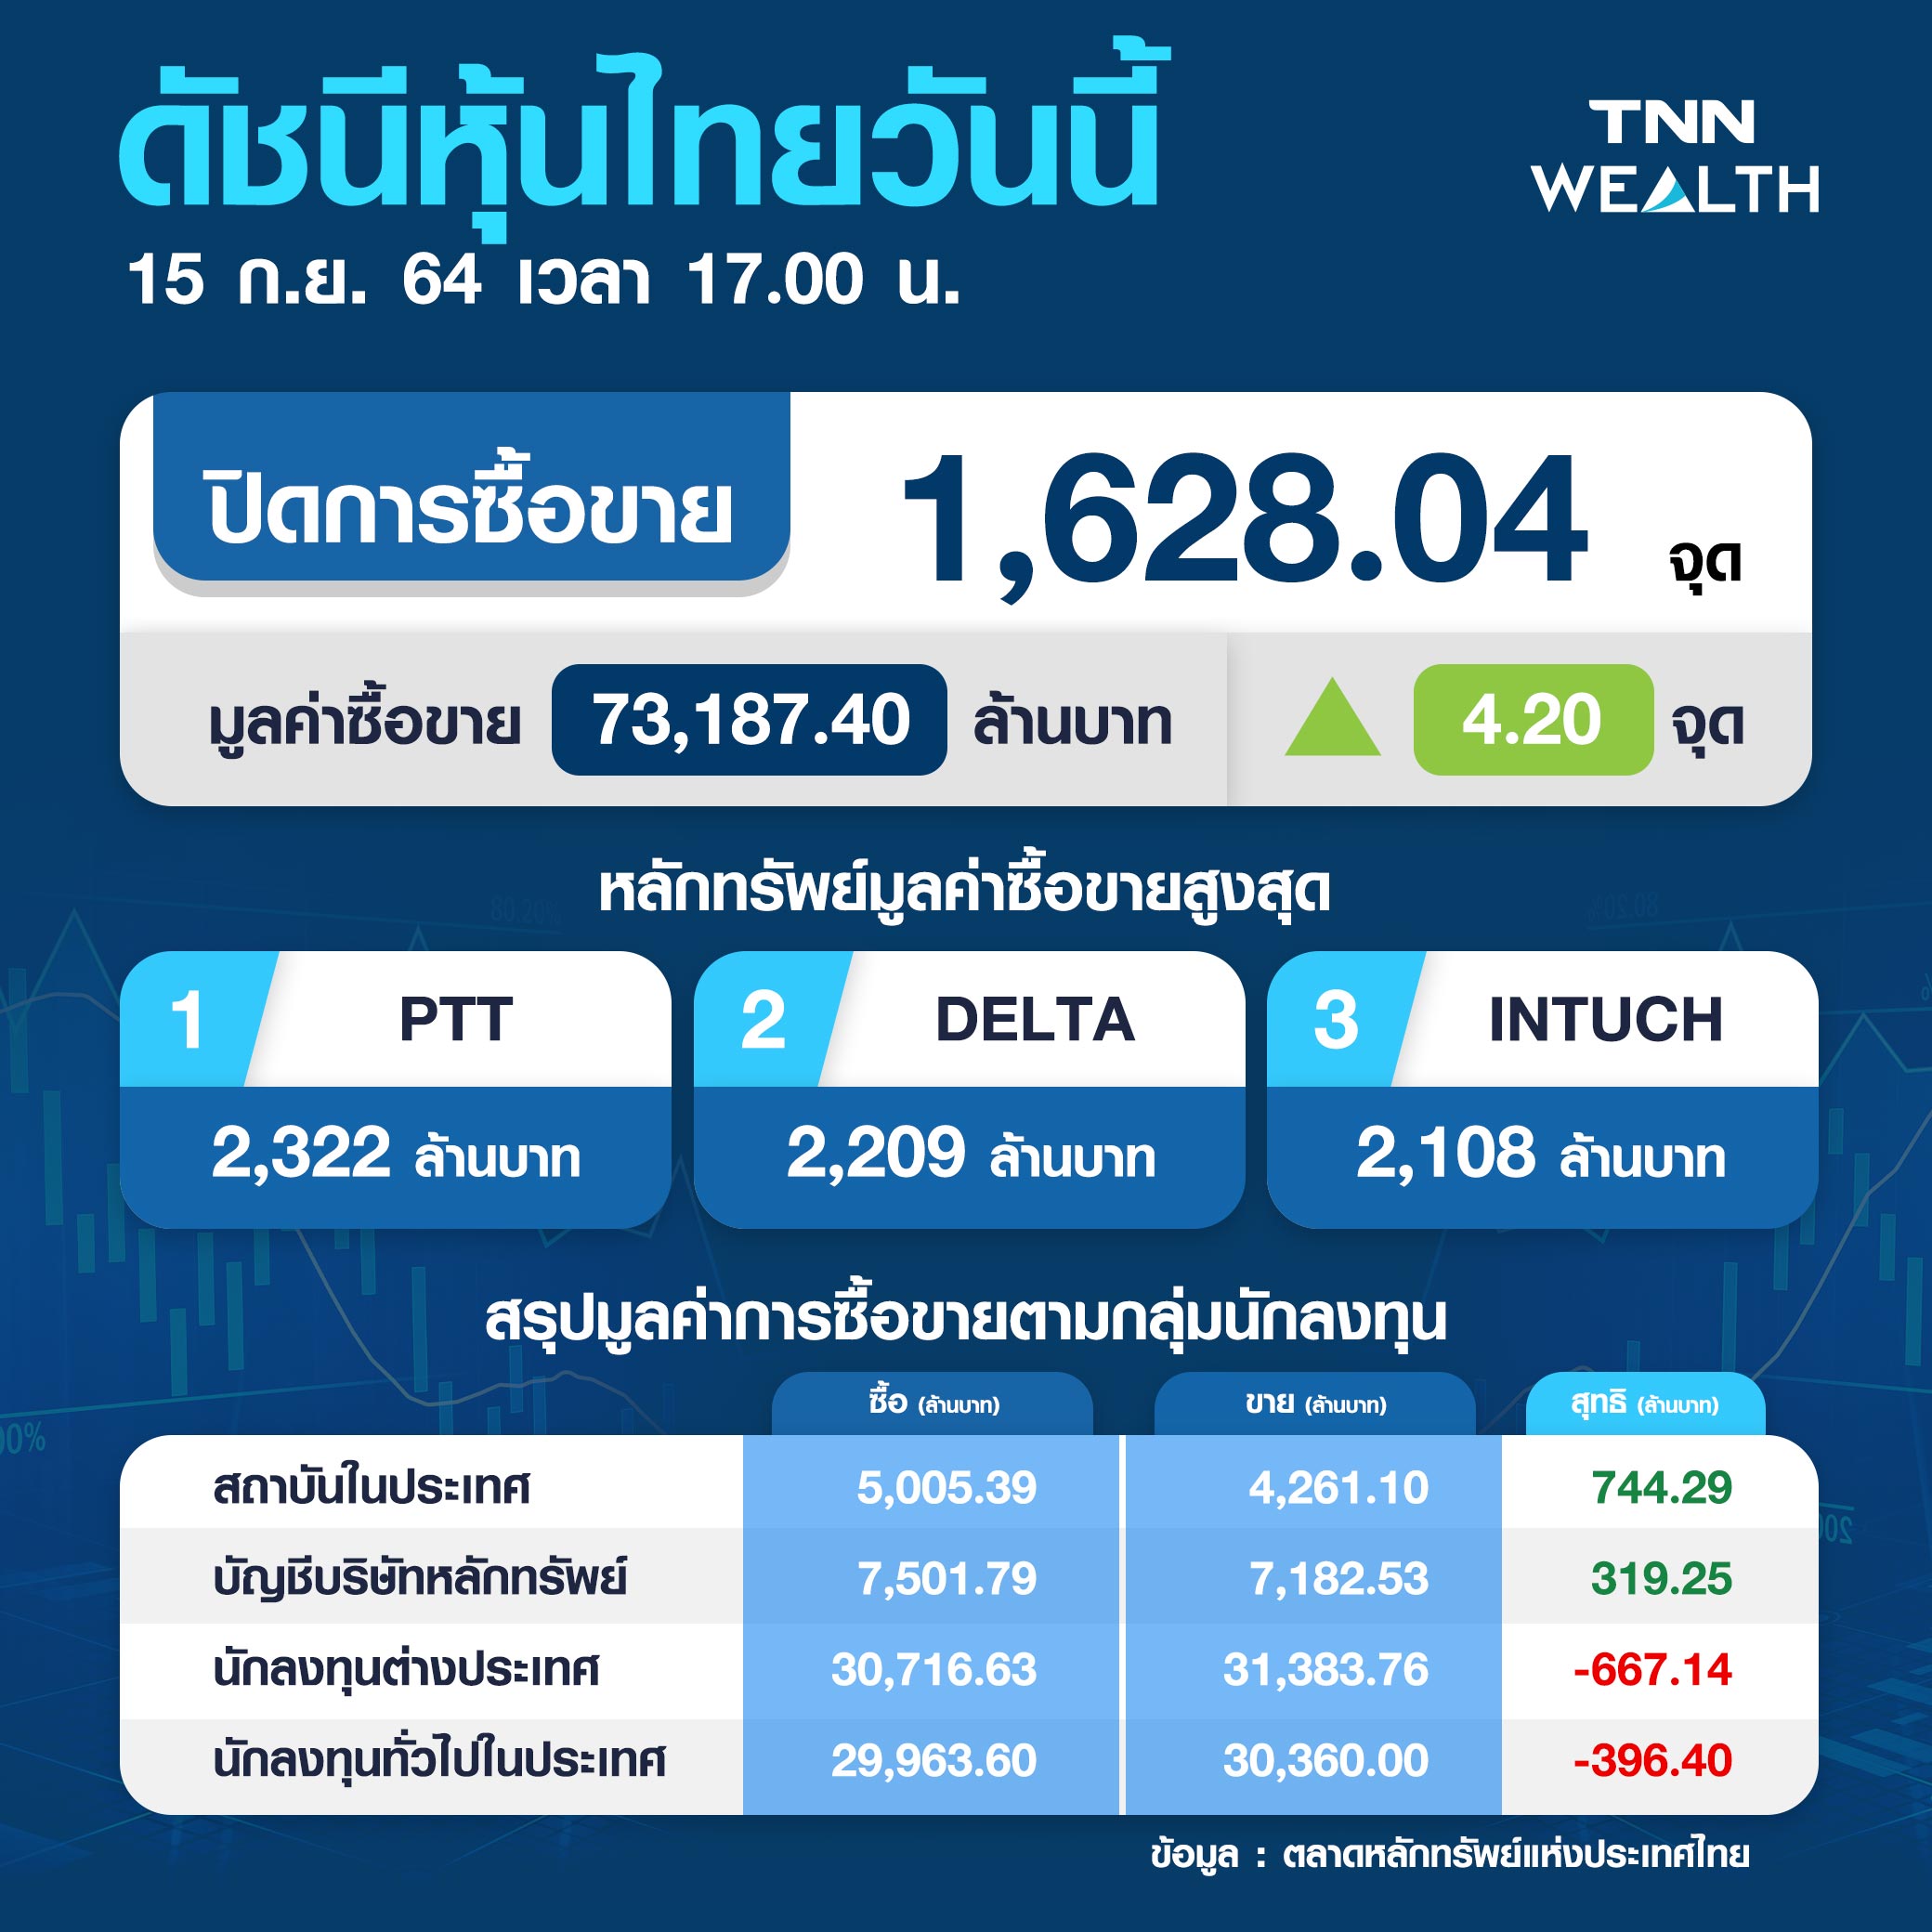 หุ้นไทยปิดวันนี้บวกได้ 4.20 จุด หลังแกว่งตัวในกรอบแคบ